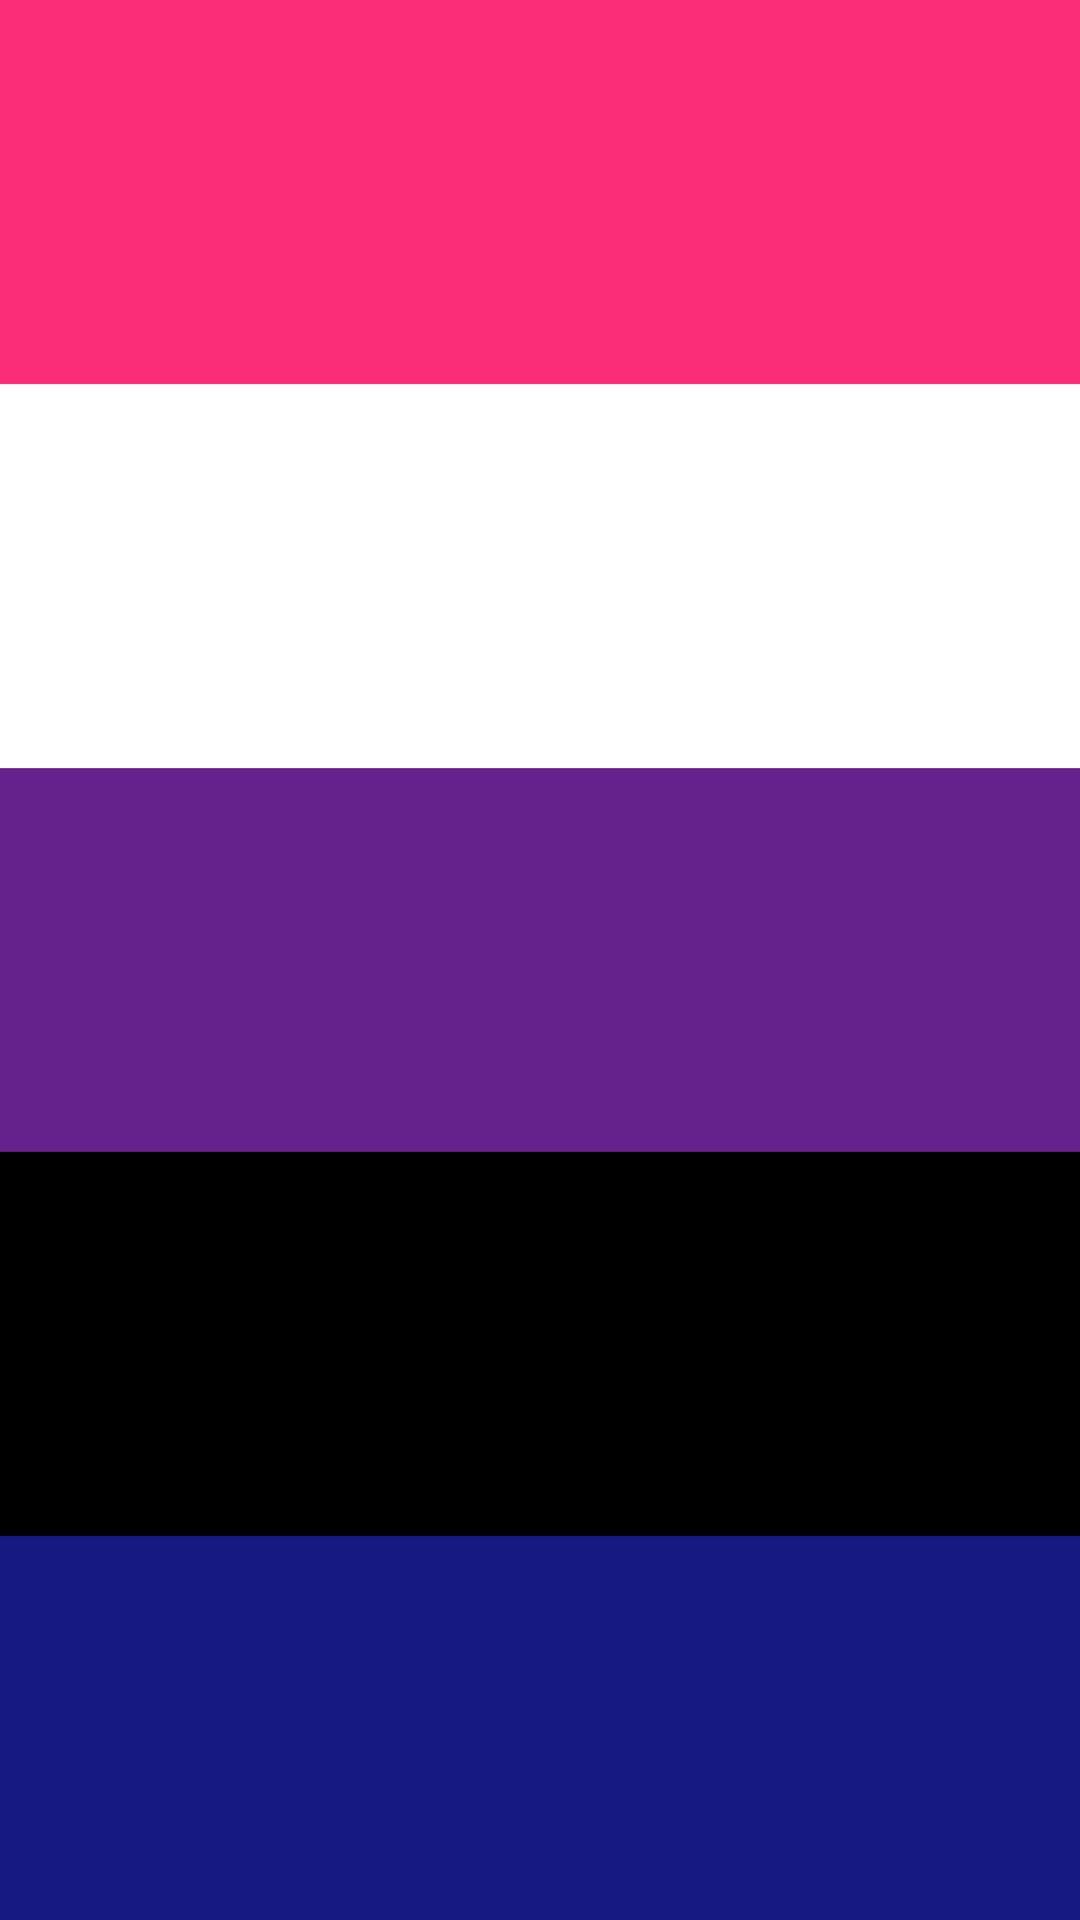 Genderfluid Flag Wallpapers - Top Free Genderfluid Flag Backgrounds